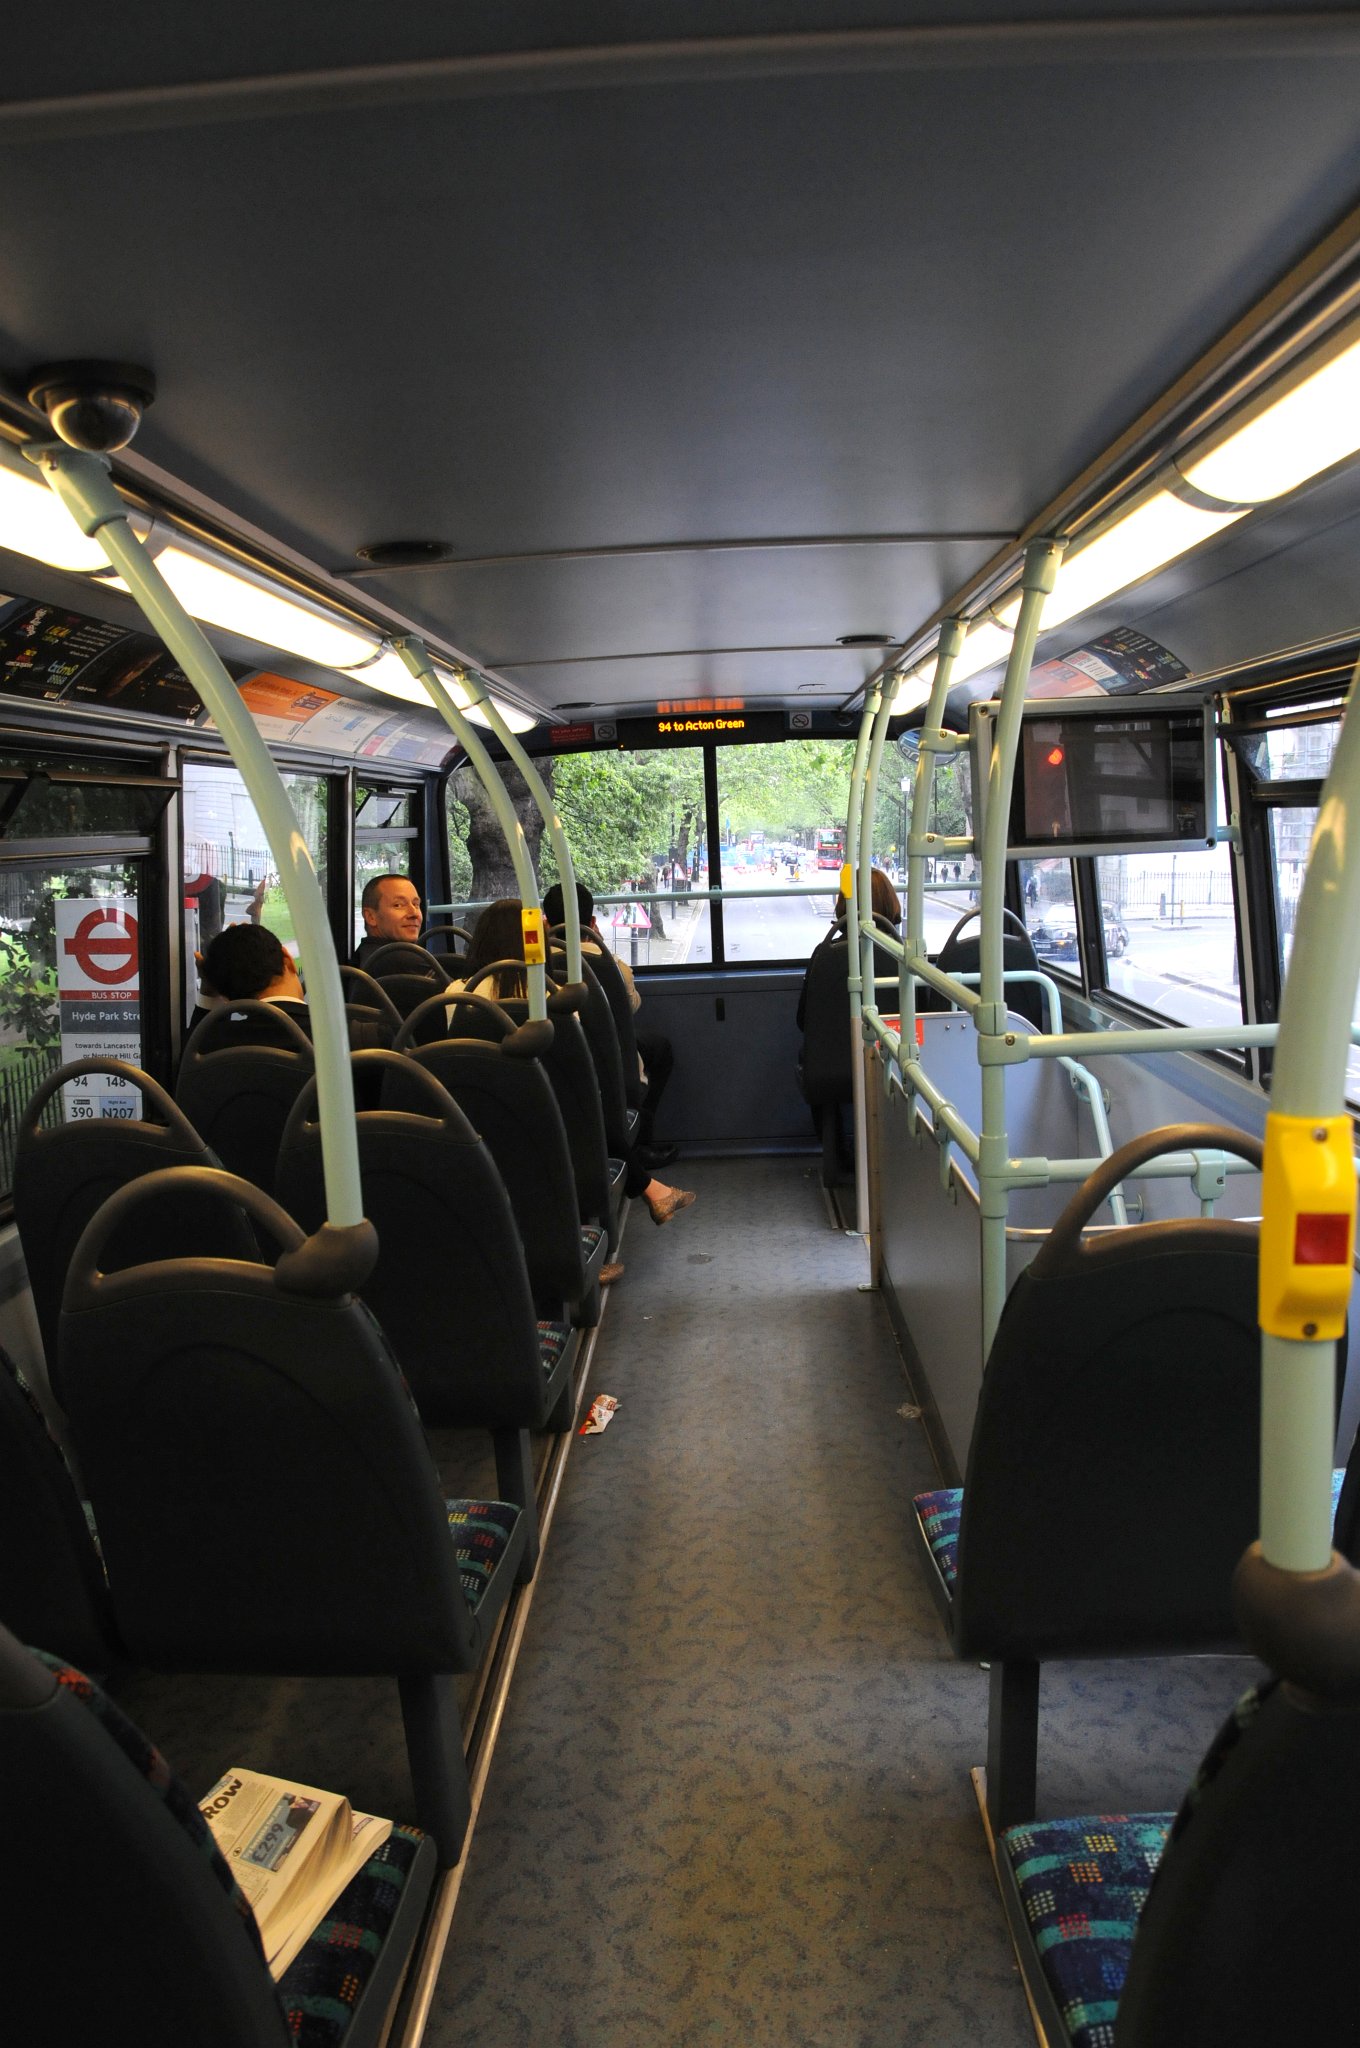 DSC_6227_1.jpg - Autobusová síť v Londýně je jedna z nejrozsáhlejších na světě. Více než 6 500 autobusů zajišťuje pravidelné spojení na více než 700 linkách. V průběhu roku použije autobusovou dopravu asi 1,5 miliardy cestujících.